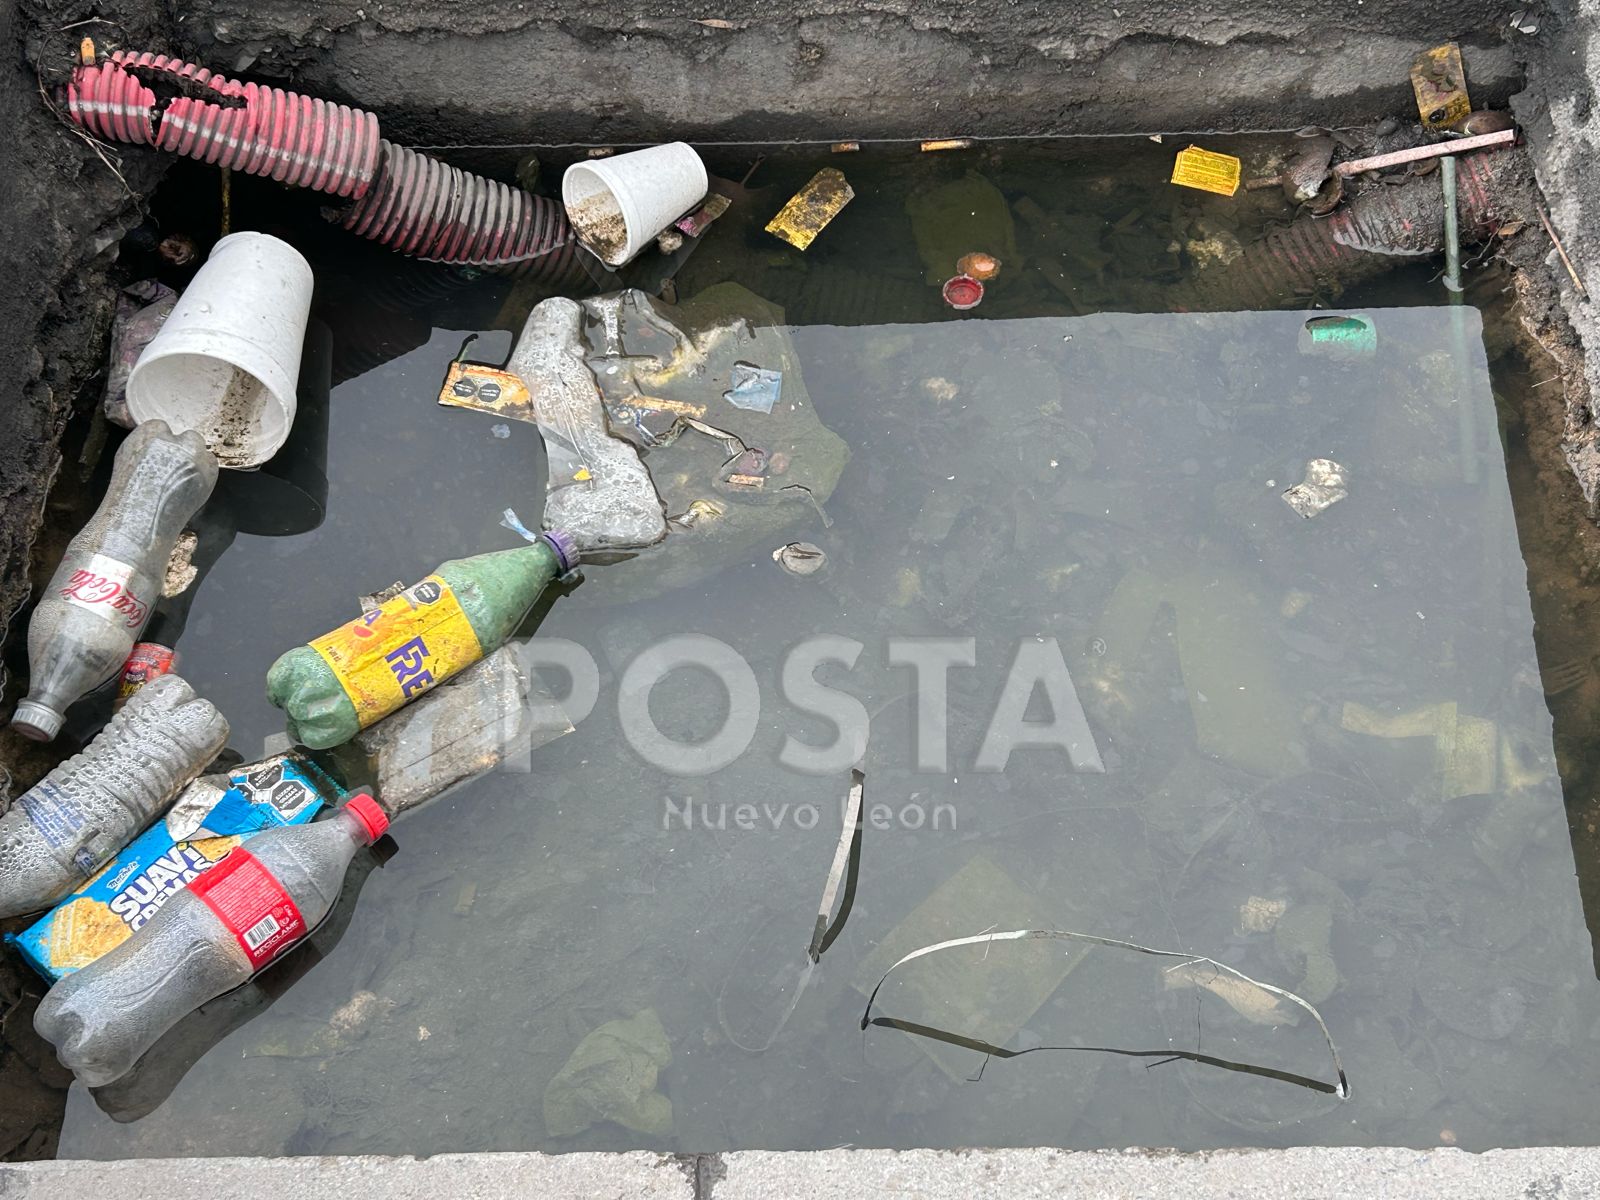 En un recorrido hecho por POSTA, se pudo observar como algunas zonas de la ciudad de Monterrey permanecen sucias y pese al esfuerzo de los trabajadores de Servicios Públicos, parece ser que los ciudadanos no hacen su parte en cuidarla. Foto: Rosy Sandoval.